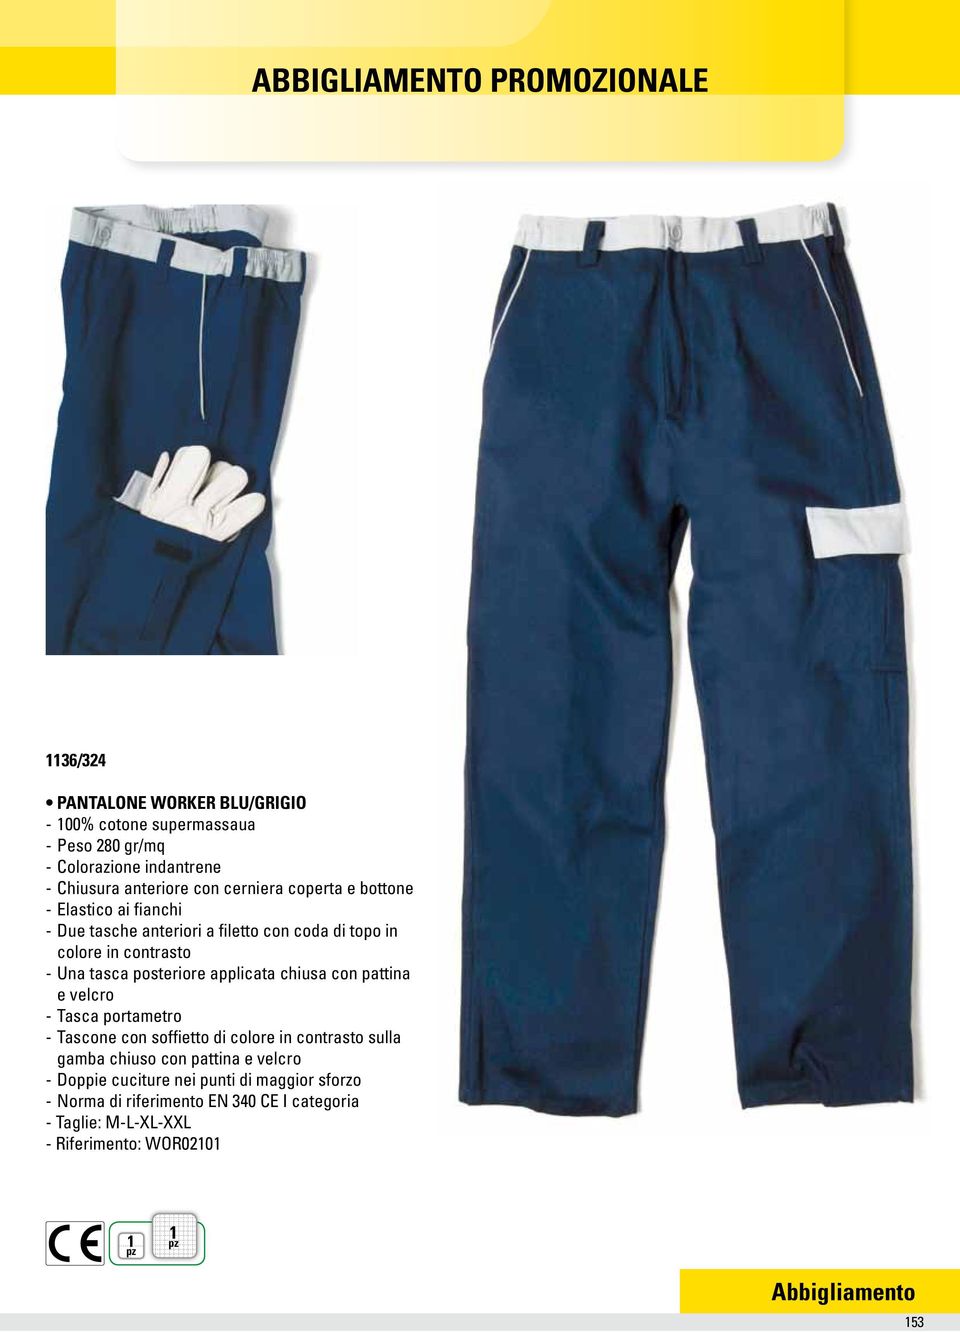 tasca posteriore applicata chiusa con pattina e velcro - Tasca portametro - Tascone con soffietto di colore in contrasto sulla gamba chiuso con